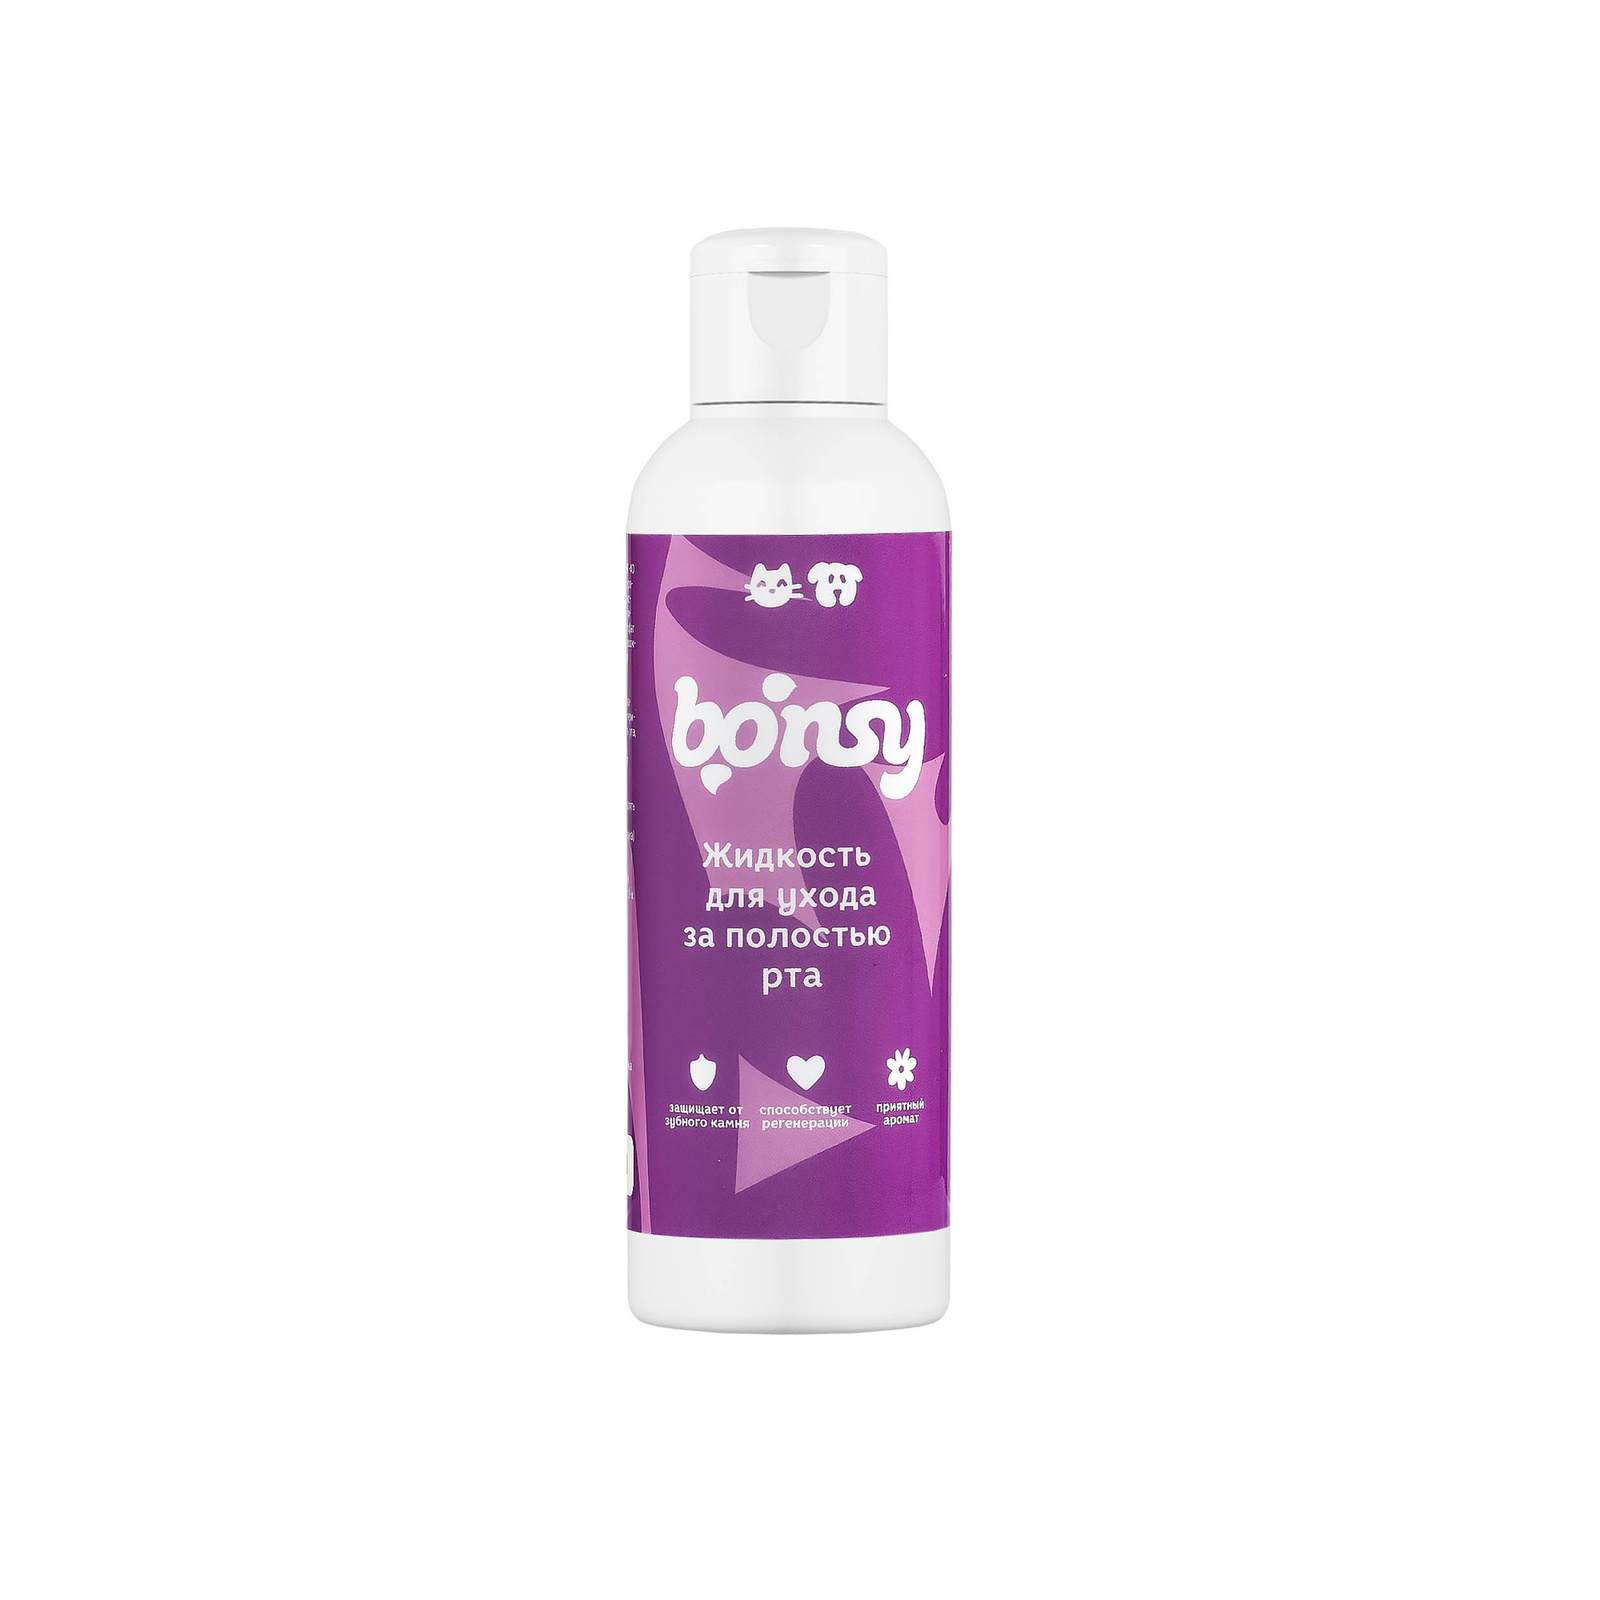 Bonsy Bonsy жидкость для ухода за полостью рта кошек и собак (150 г) bonsy bonsy гель для рук с антибактериальным эффектом 150 г